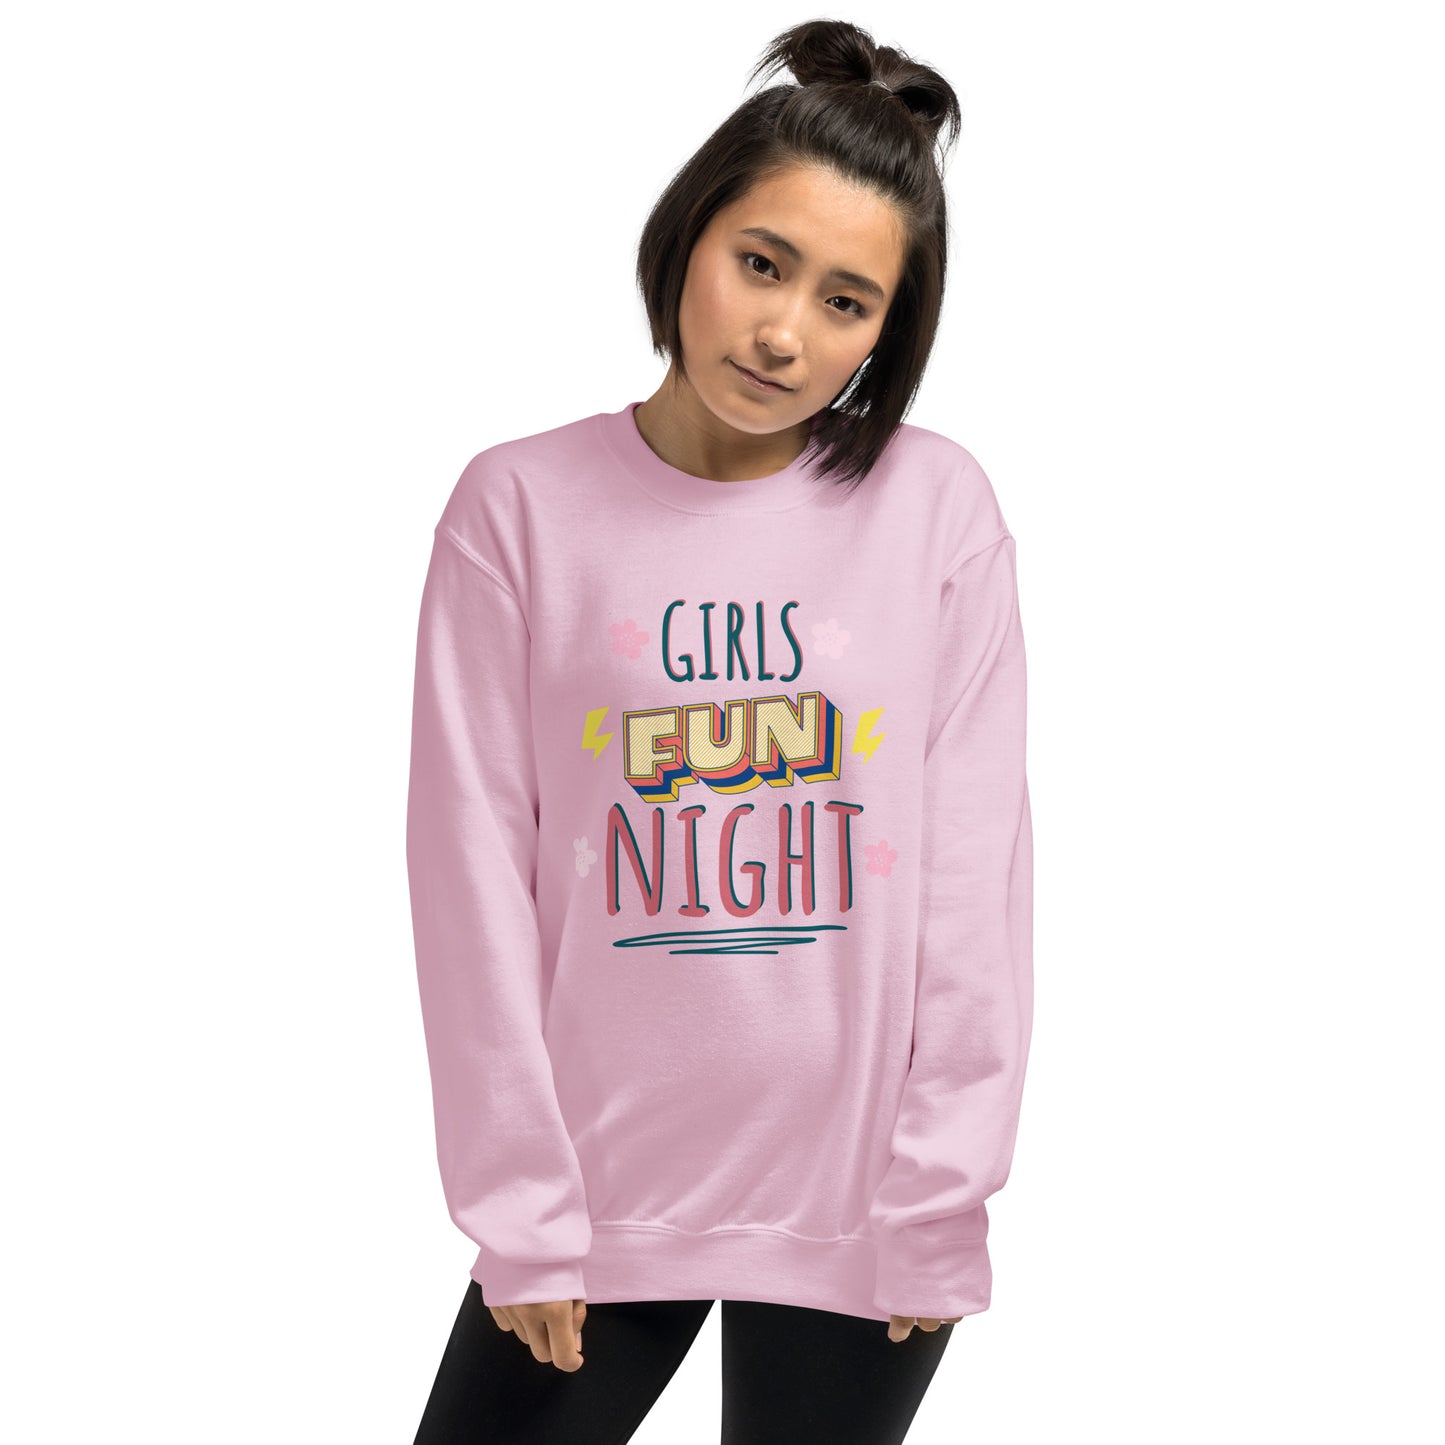 Girls Fun Night Graphic Sweatshirt